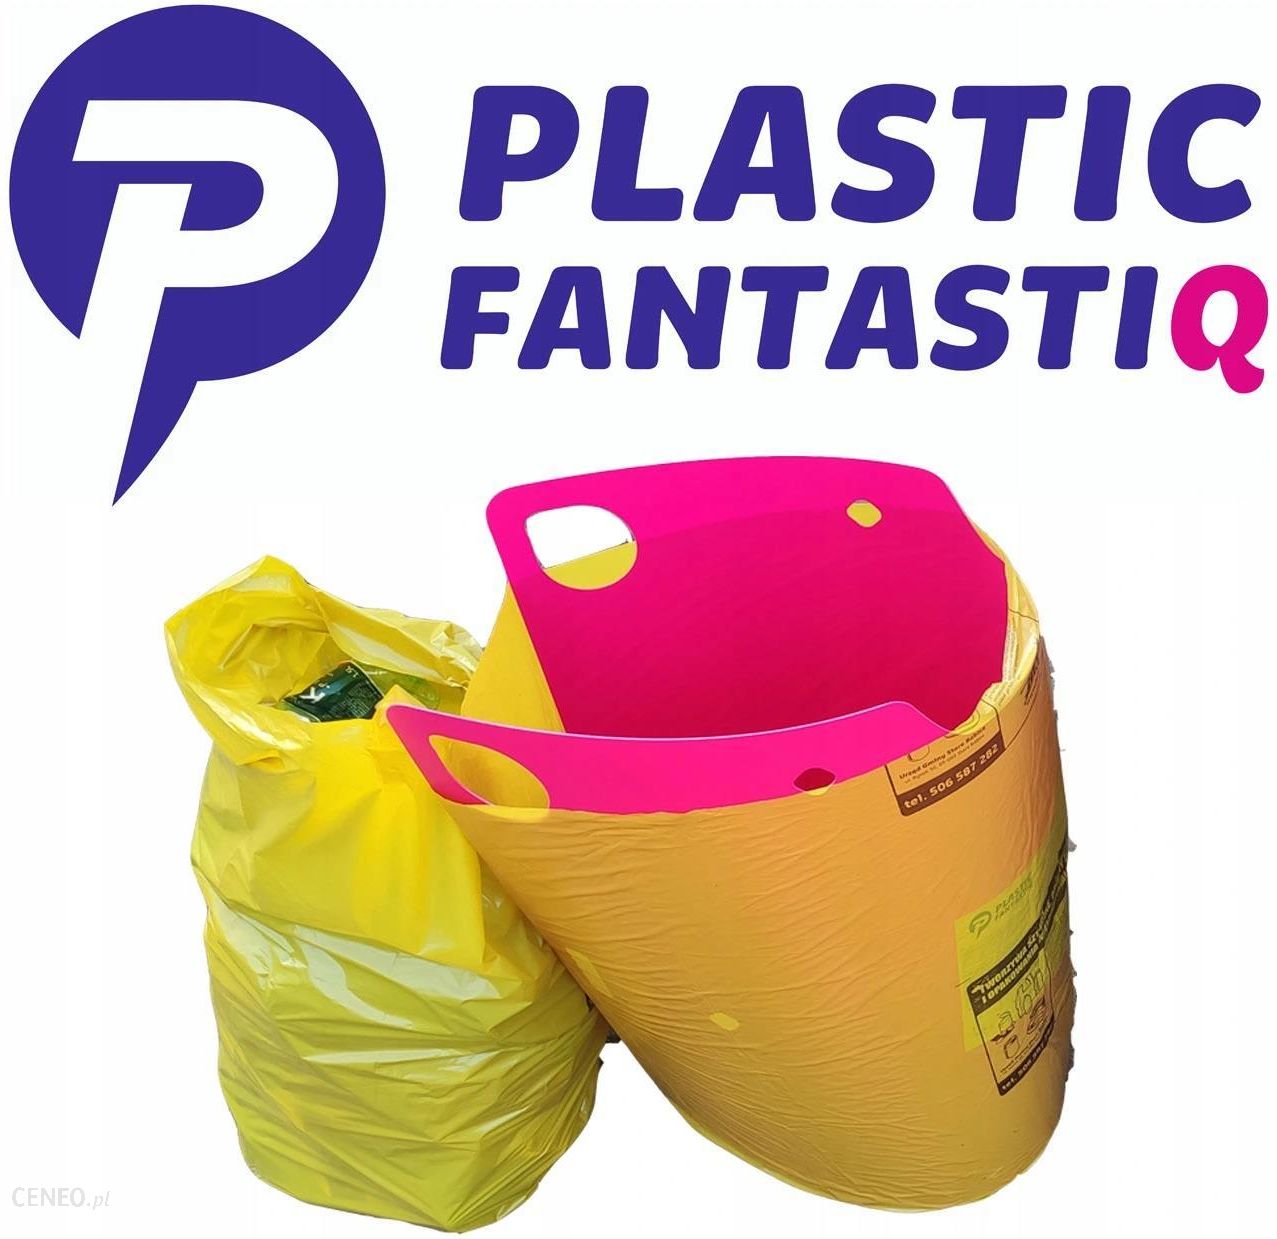 Plastic Fantastiq Wkładka Do Worków Bagbooster Xl 5903719610414